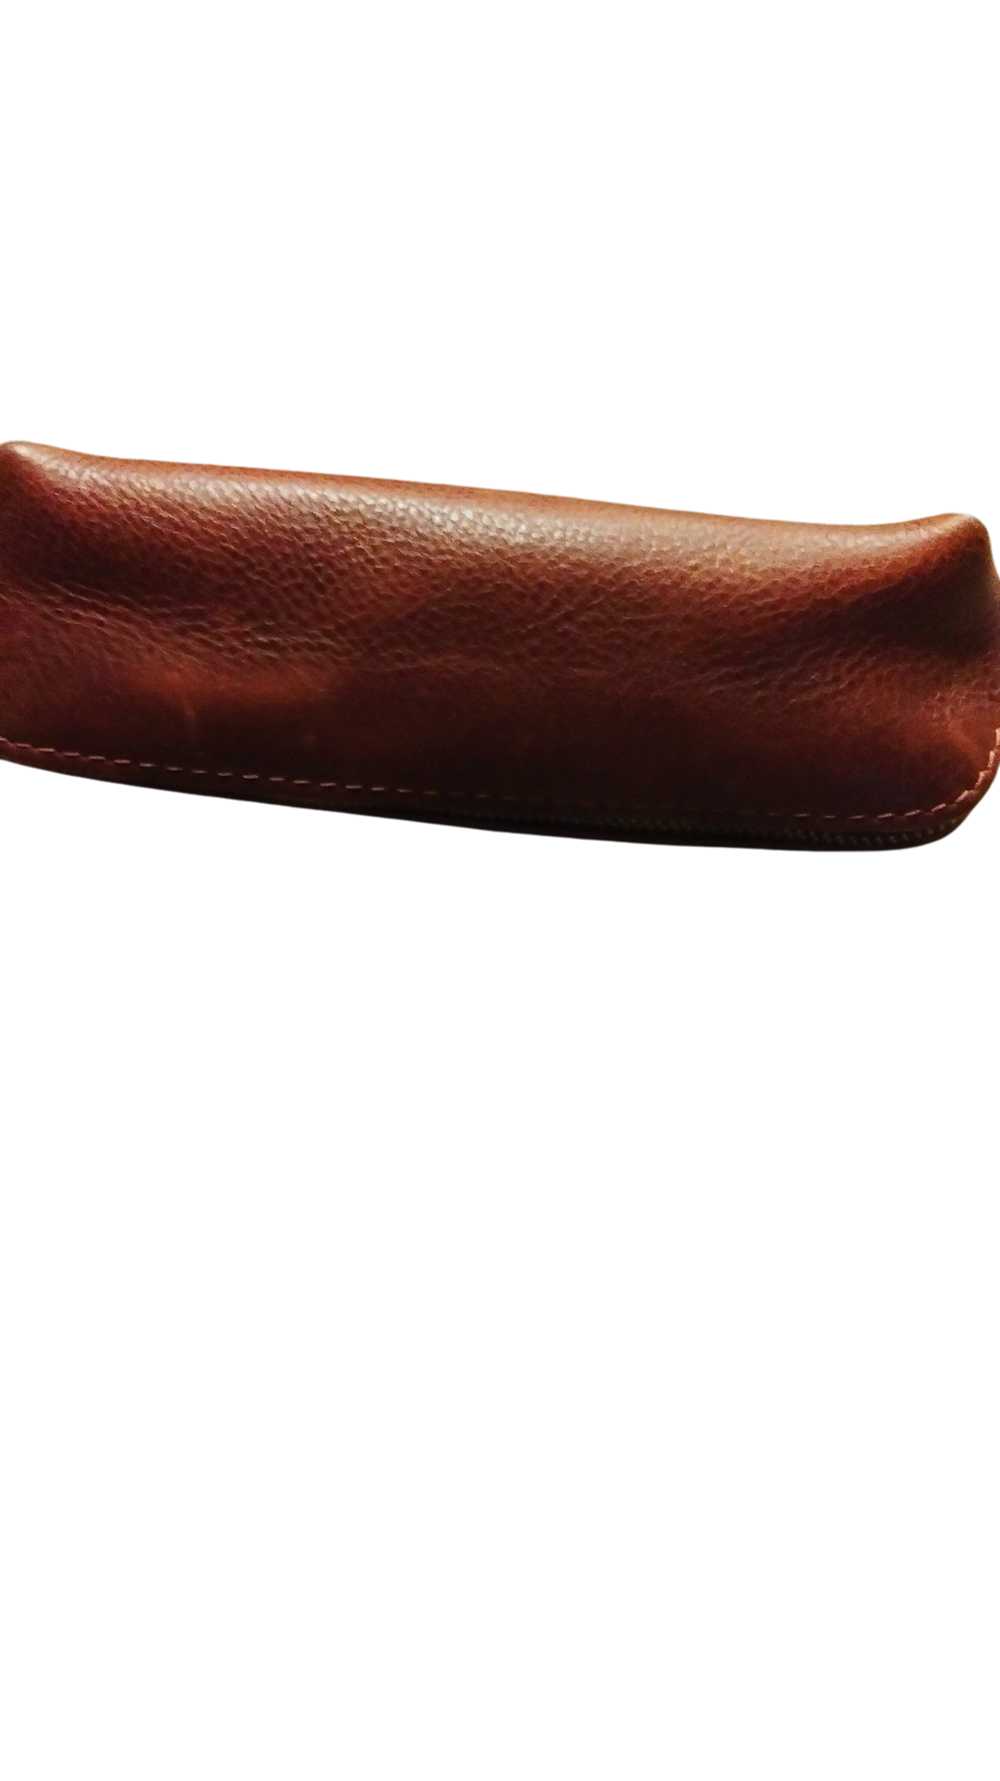 Portland Leather Nutmeg Utility Bag Premium - image 4